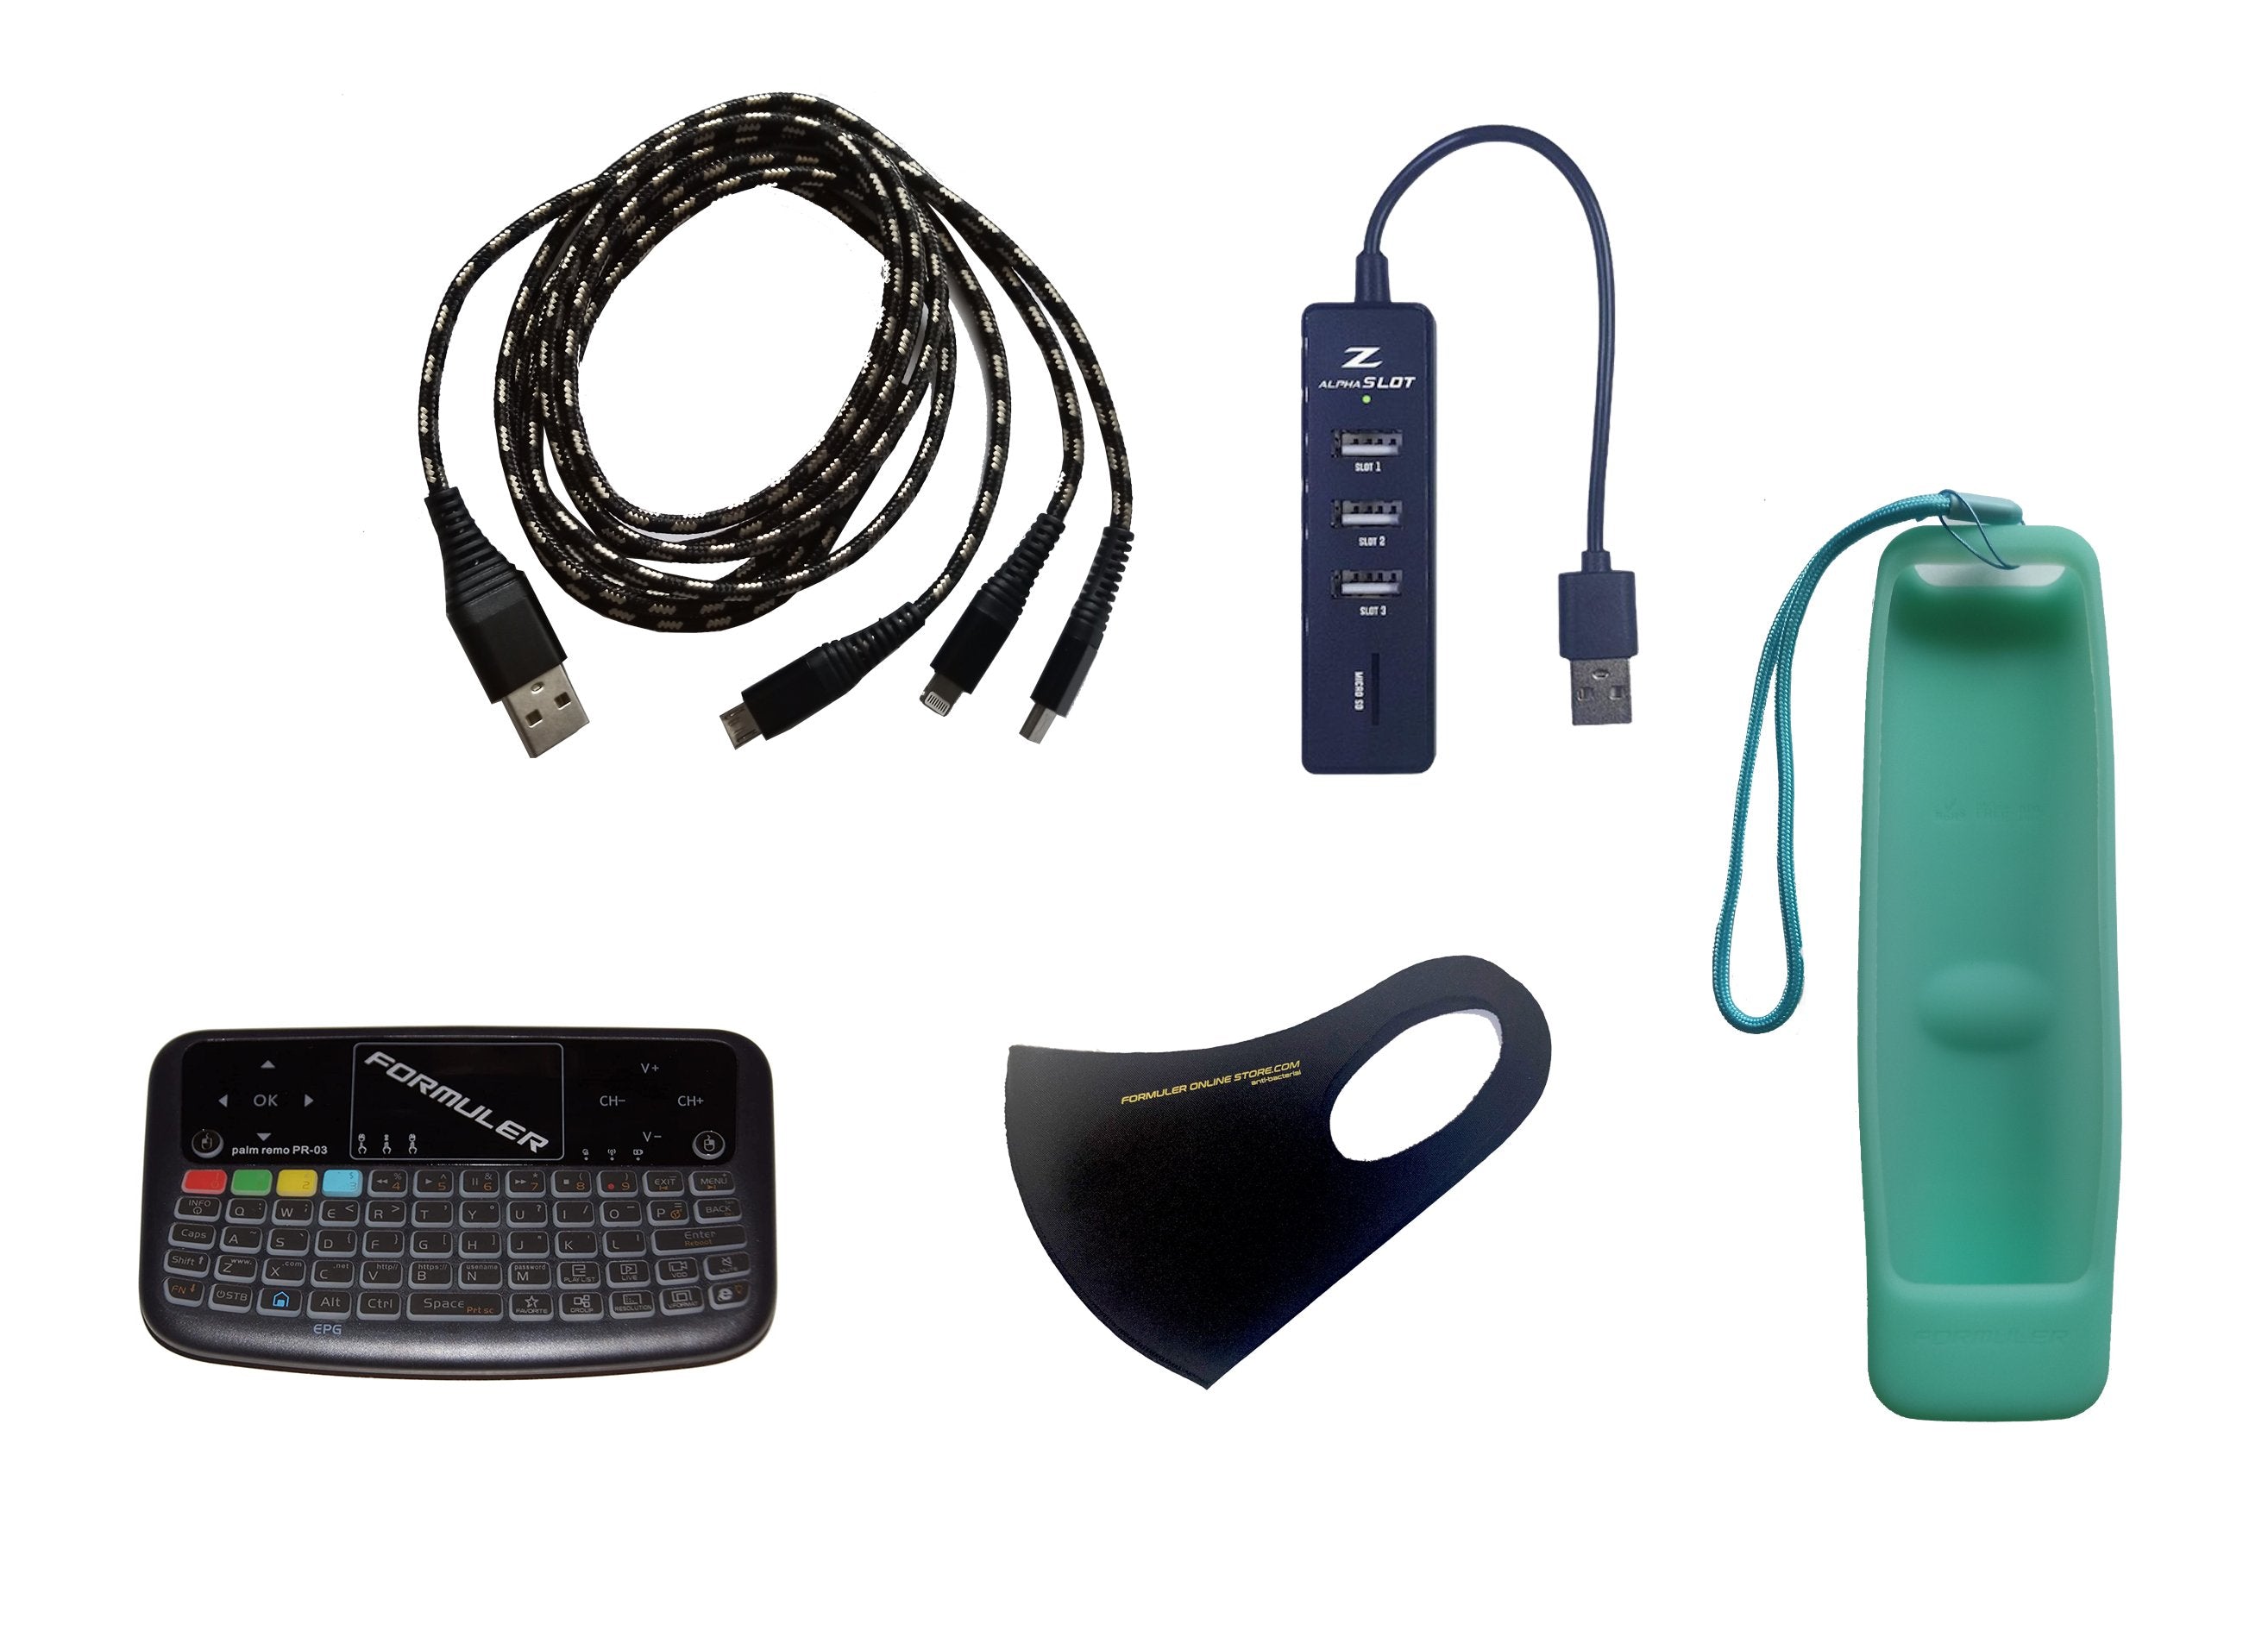 Paquete de accesorios incluido: Mini teclado inalámbrico con panel táctil + concentrador USB + cable de extensión USB 3-1 + cubierta remota verde + máscara